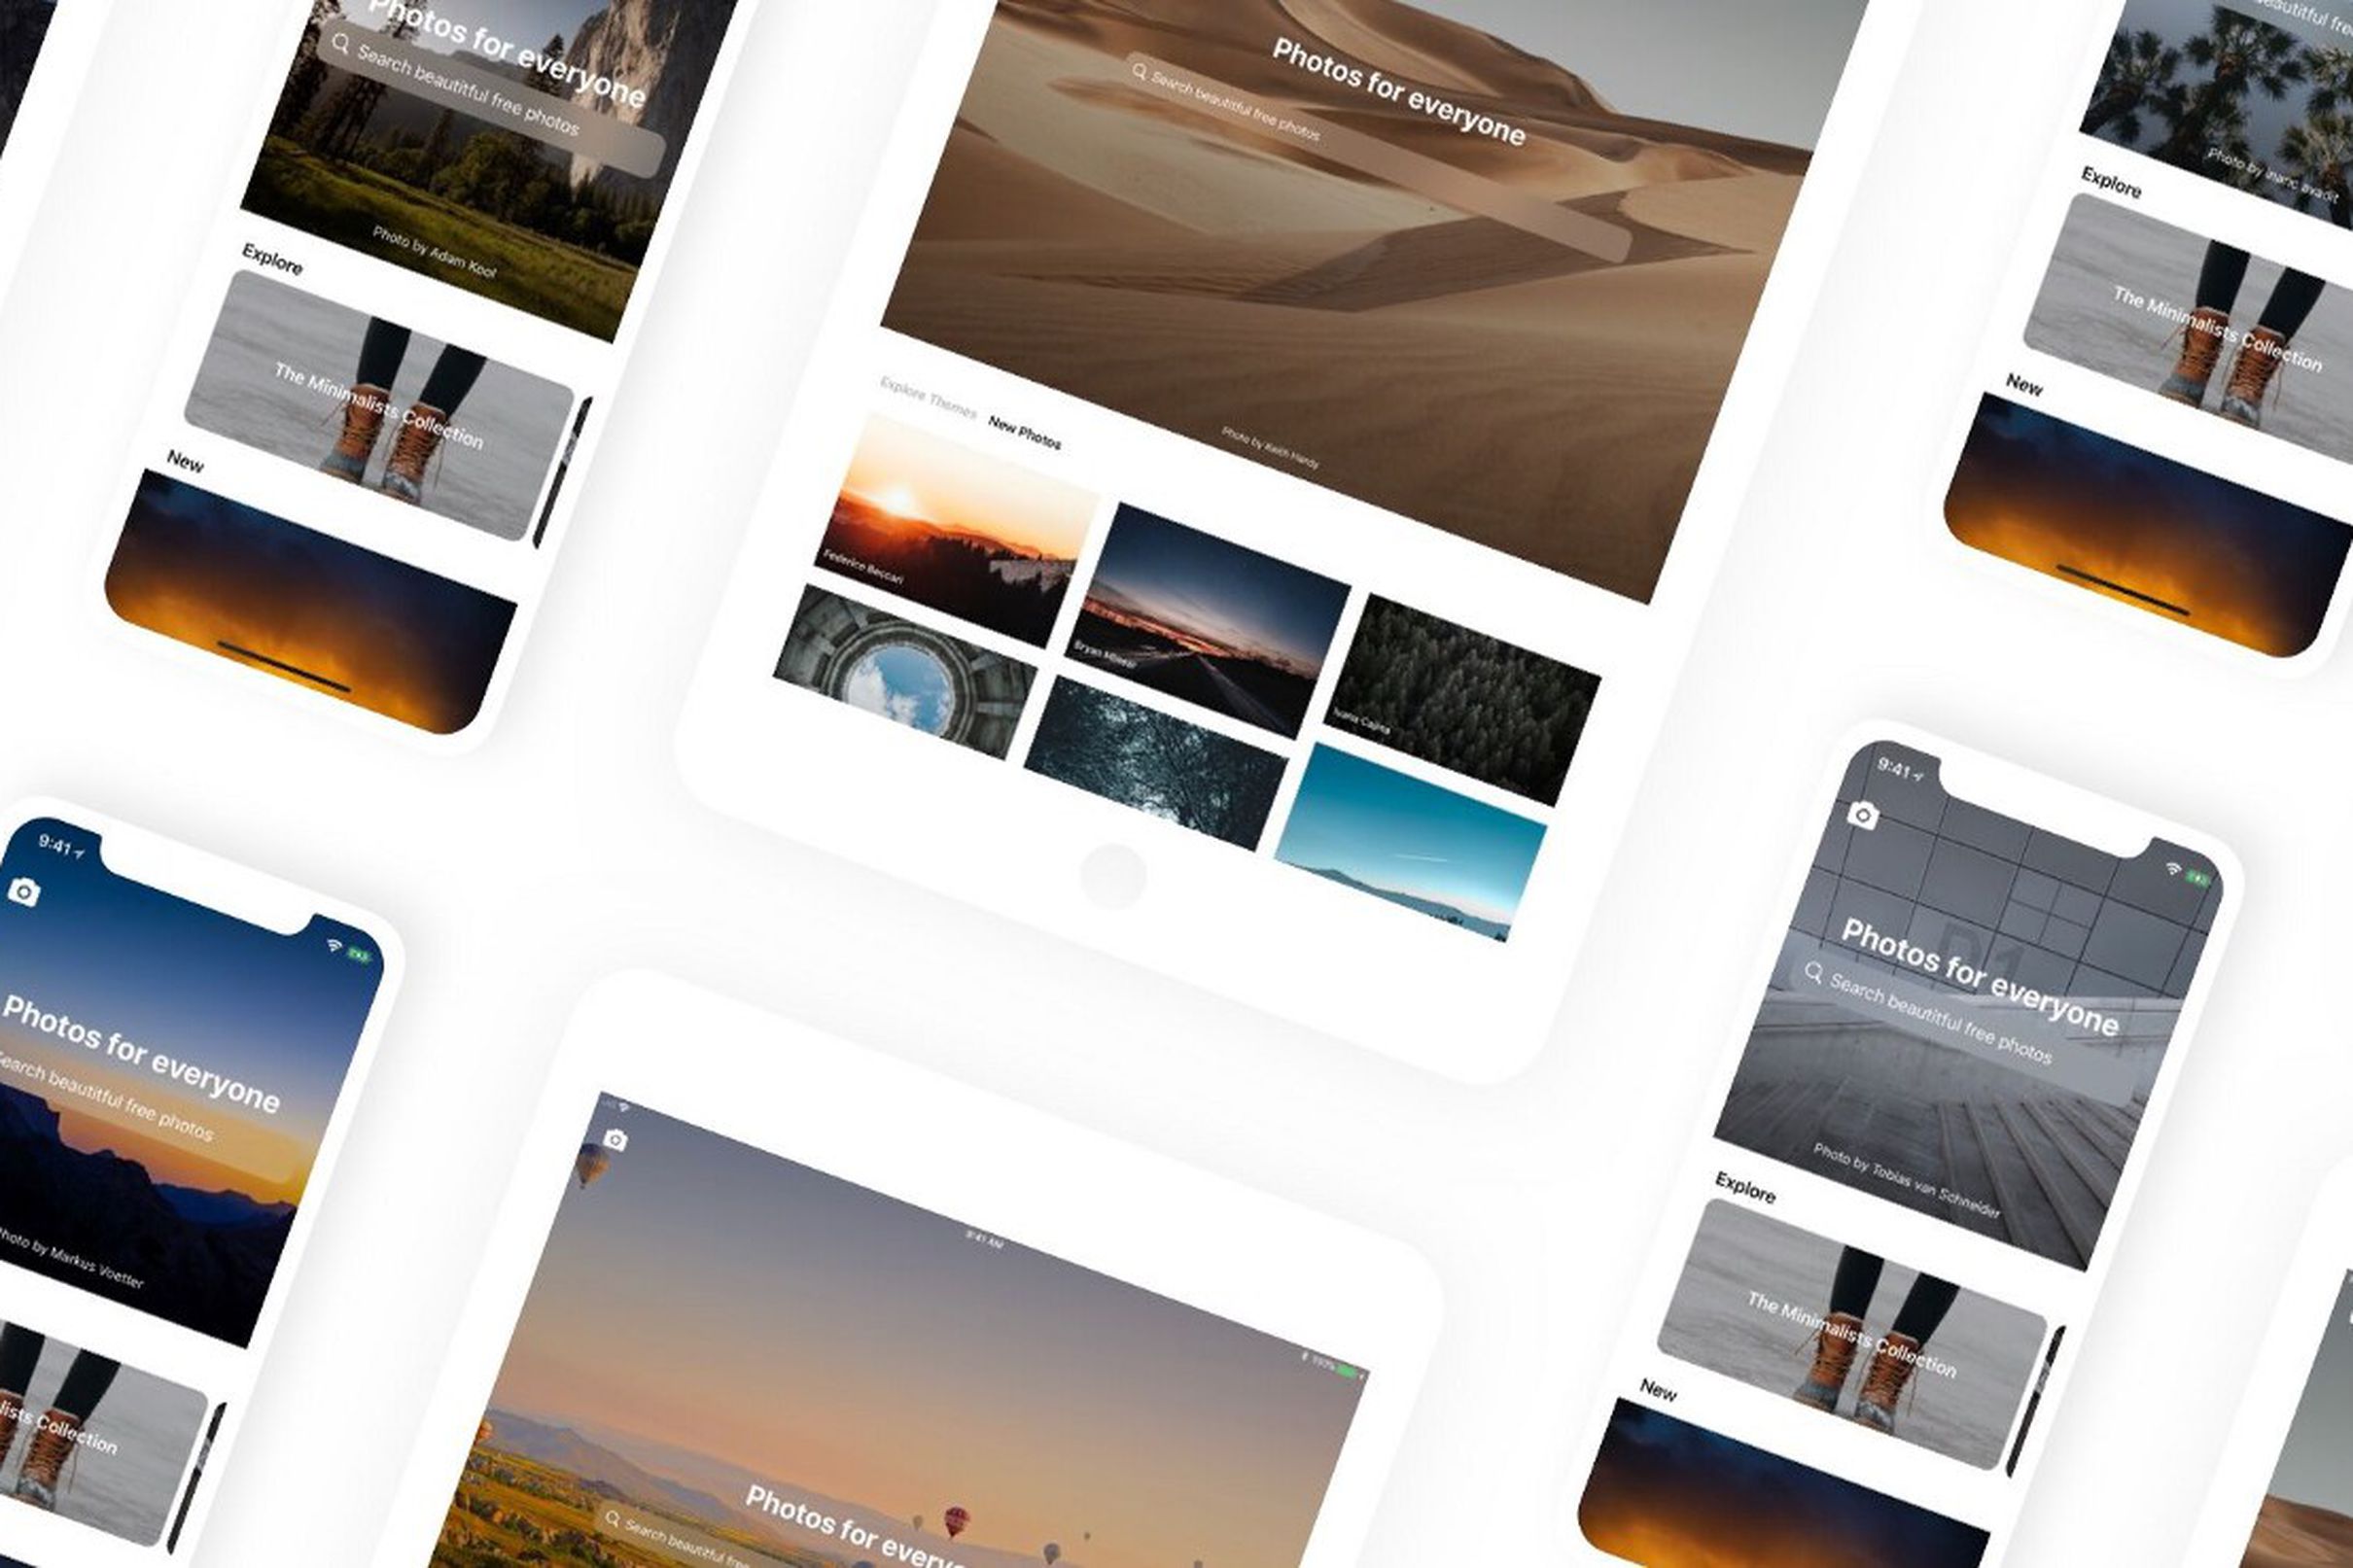 Unsplash, website chia sẻ ảnh đẹp, chất lượng cao chính thức có mặt trên iOS